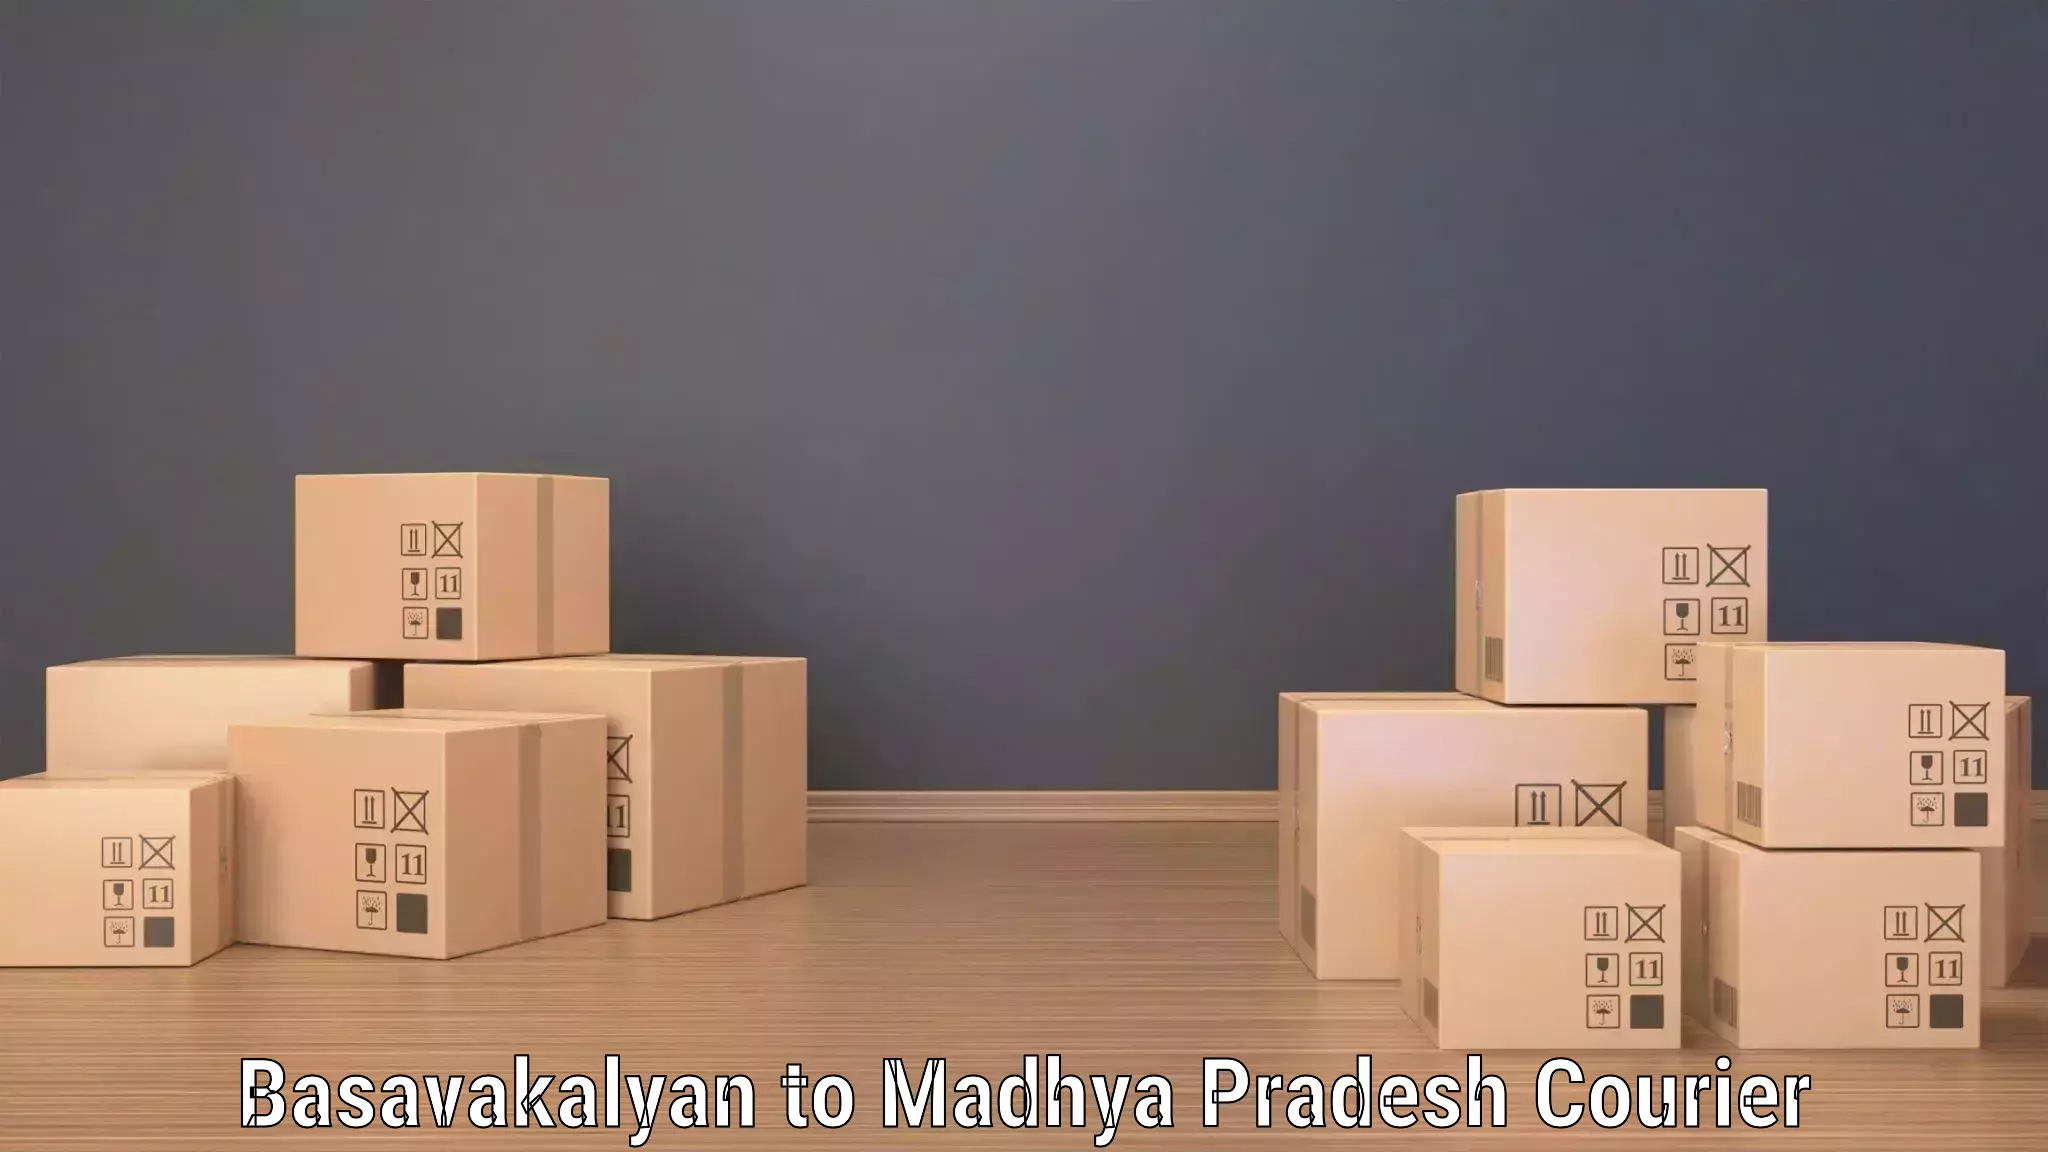 Package delivery network Basavakalyan to Gadarwara